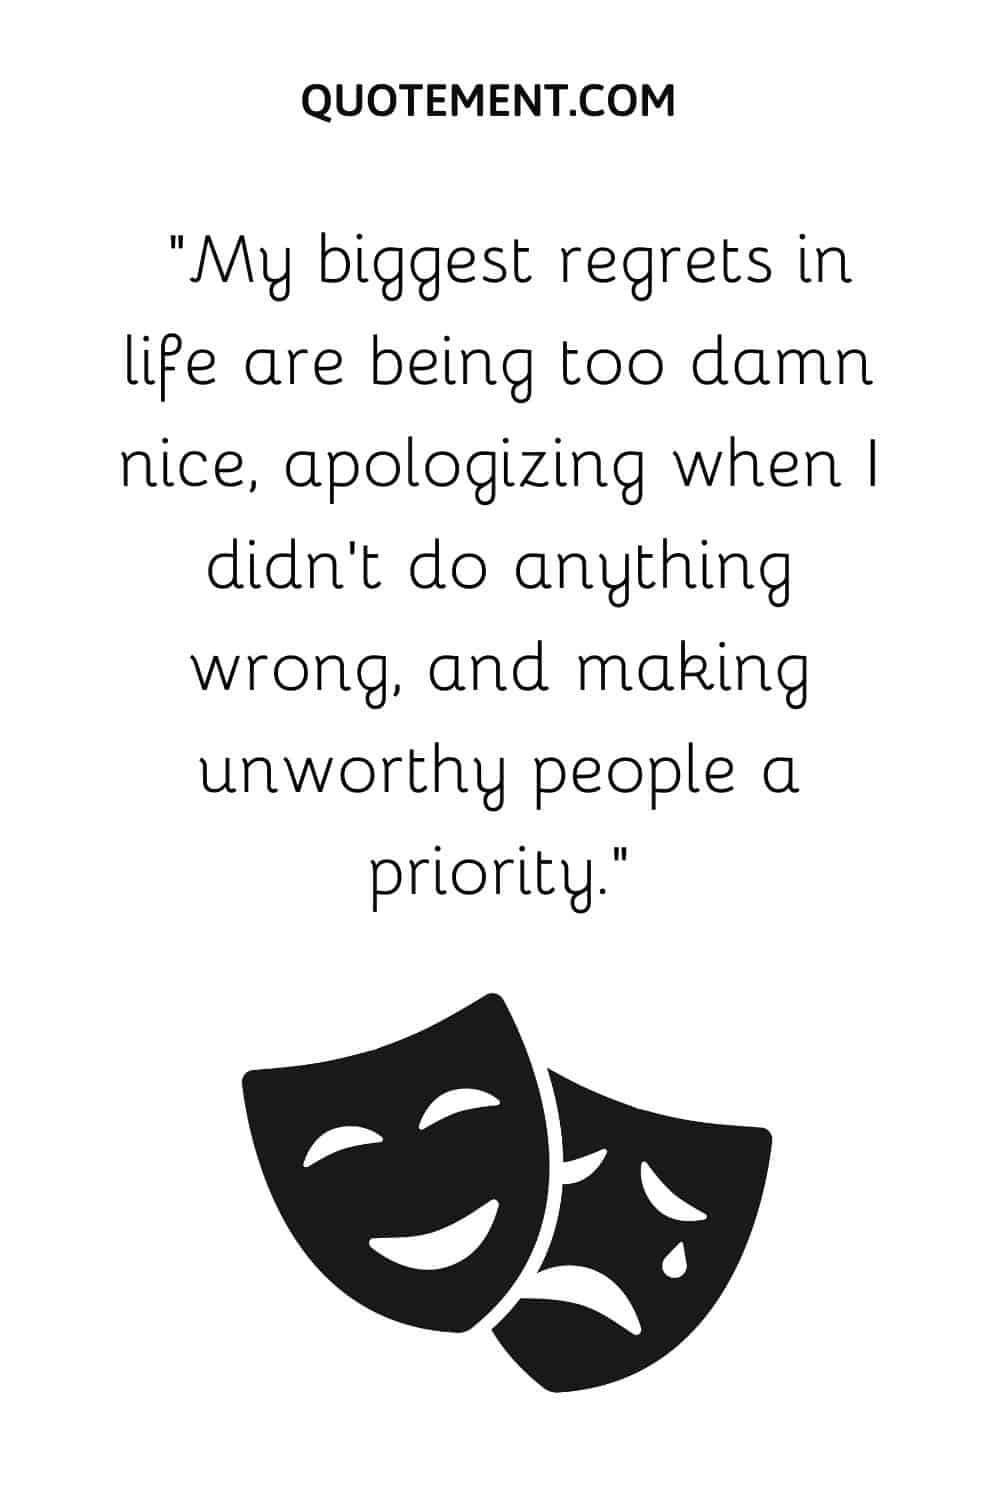 De lo que más me arrepiento en la vida es de ser demasiado amable, de disculparme cuando no he hecho nada malo y de dar prioridad a personas indignas.